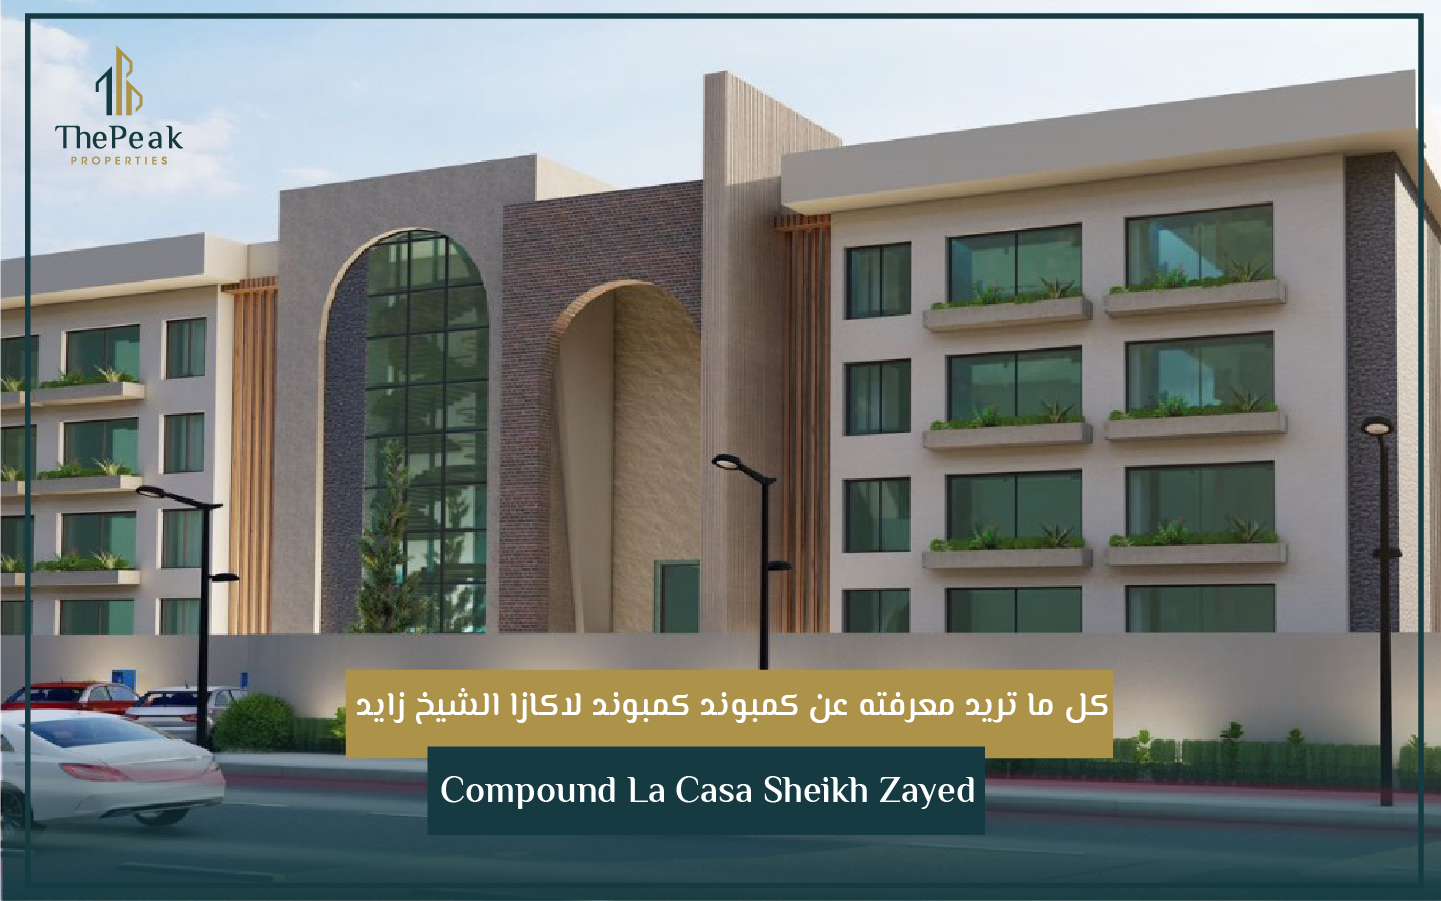 "شقة للبيع بالتقسيط بالشيخ زايد  مساحة 235 متر  مقدم 15 % و تقسيط علي 5 سنوات  في كمبوند Lacasa compound El Sheikh Zayed" | THE PEAK PROPERTIES